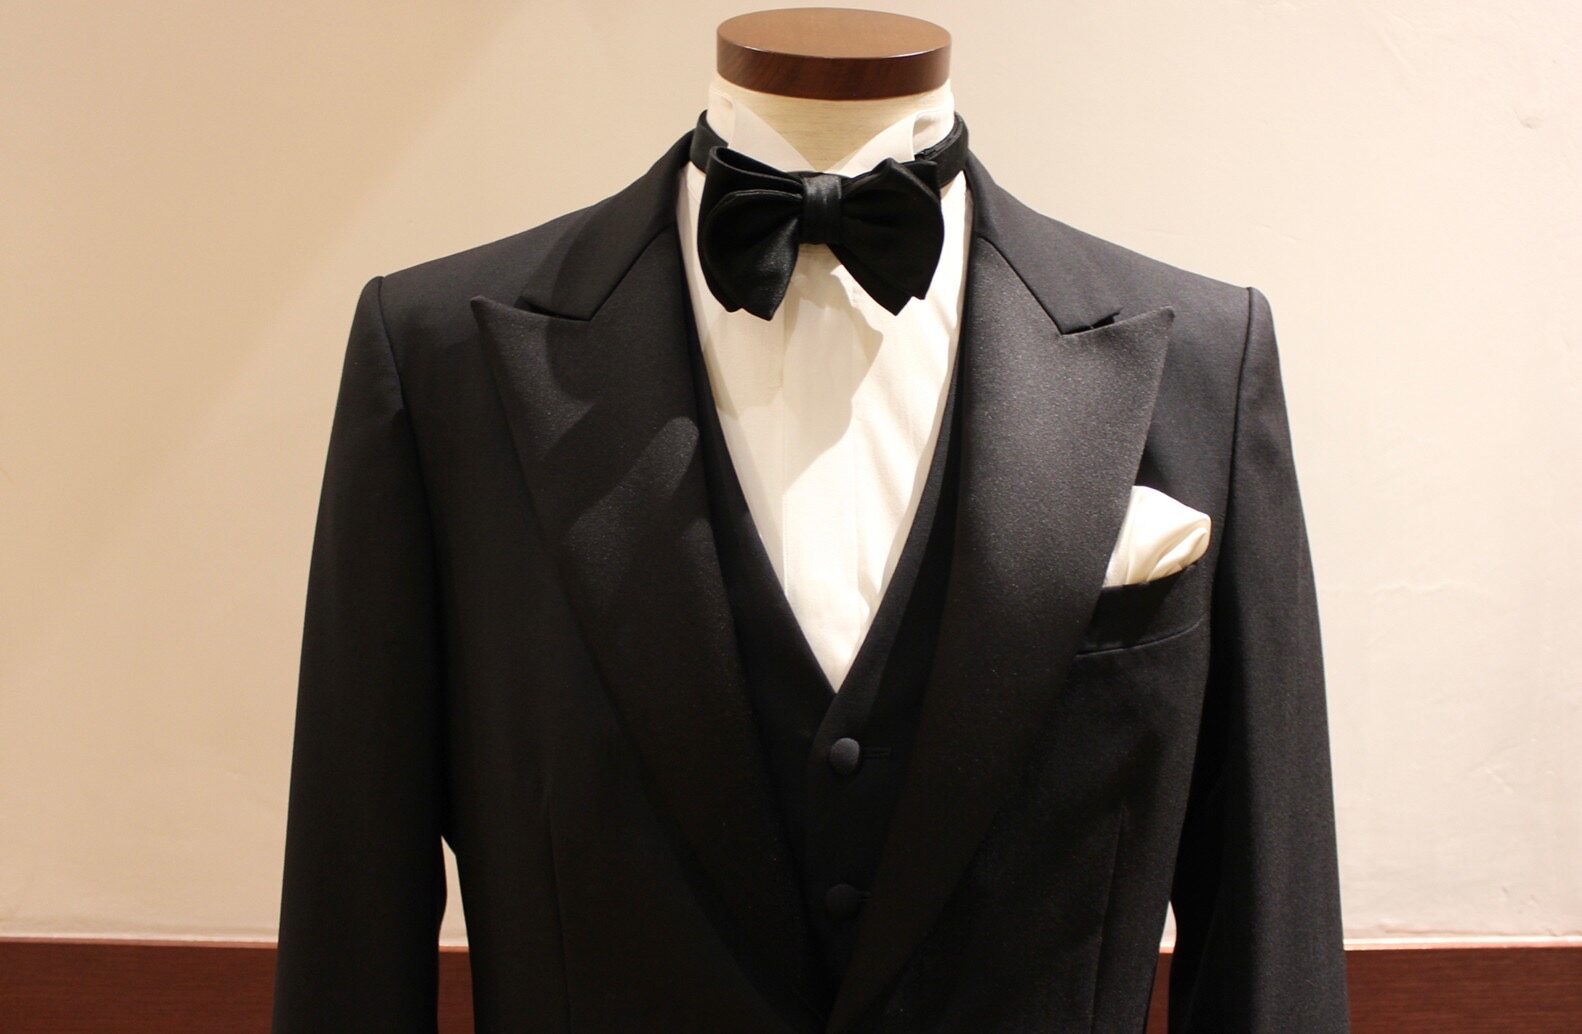 イギリス発祥の襟型であるピークドラペルは男性らしさと重厚感を兼ね備え、新郎様の装いをより厳格なものにします。